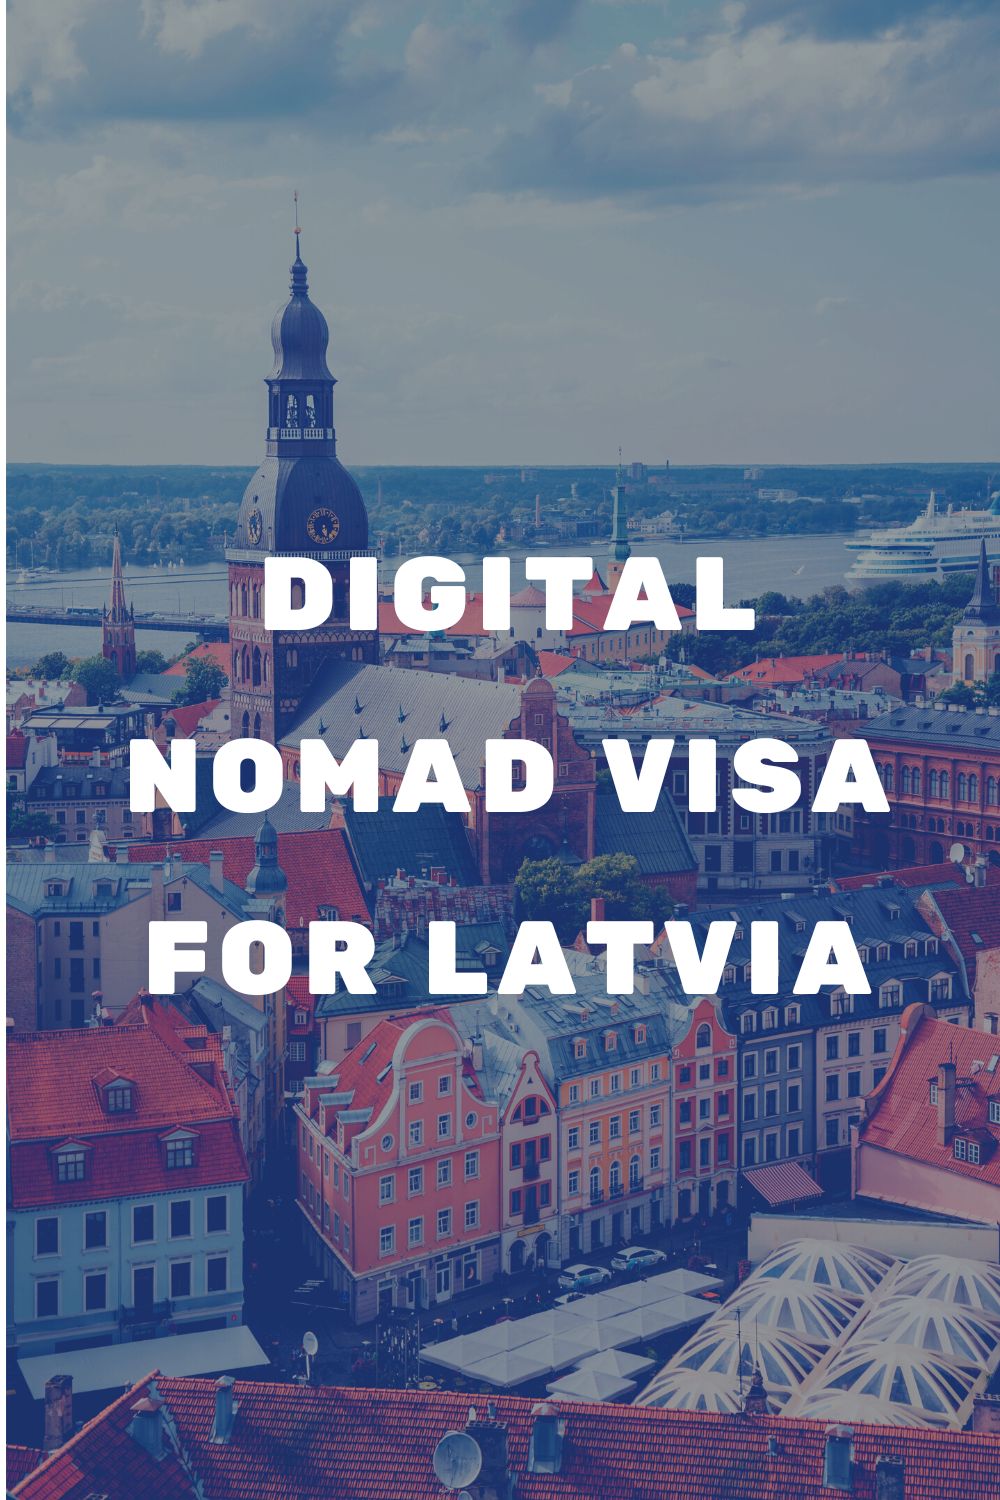 Latvia Digital Nomad Visa – The Latest Information